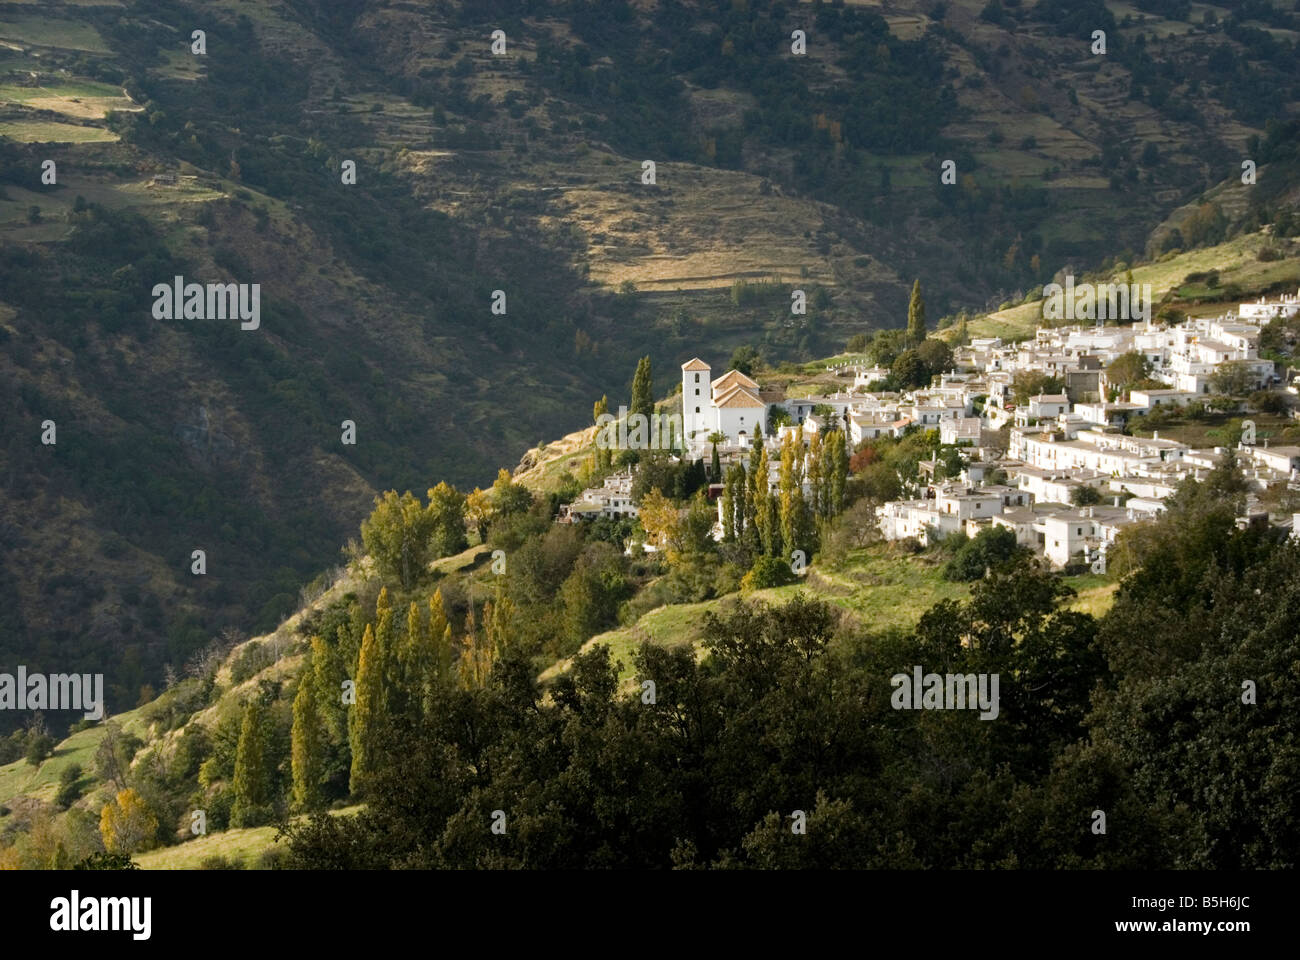 Village andalou blanchi de Bubion dans la vallée de Poqueira Sierra Nevada Espagne Alpujarra Banque D'Images